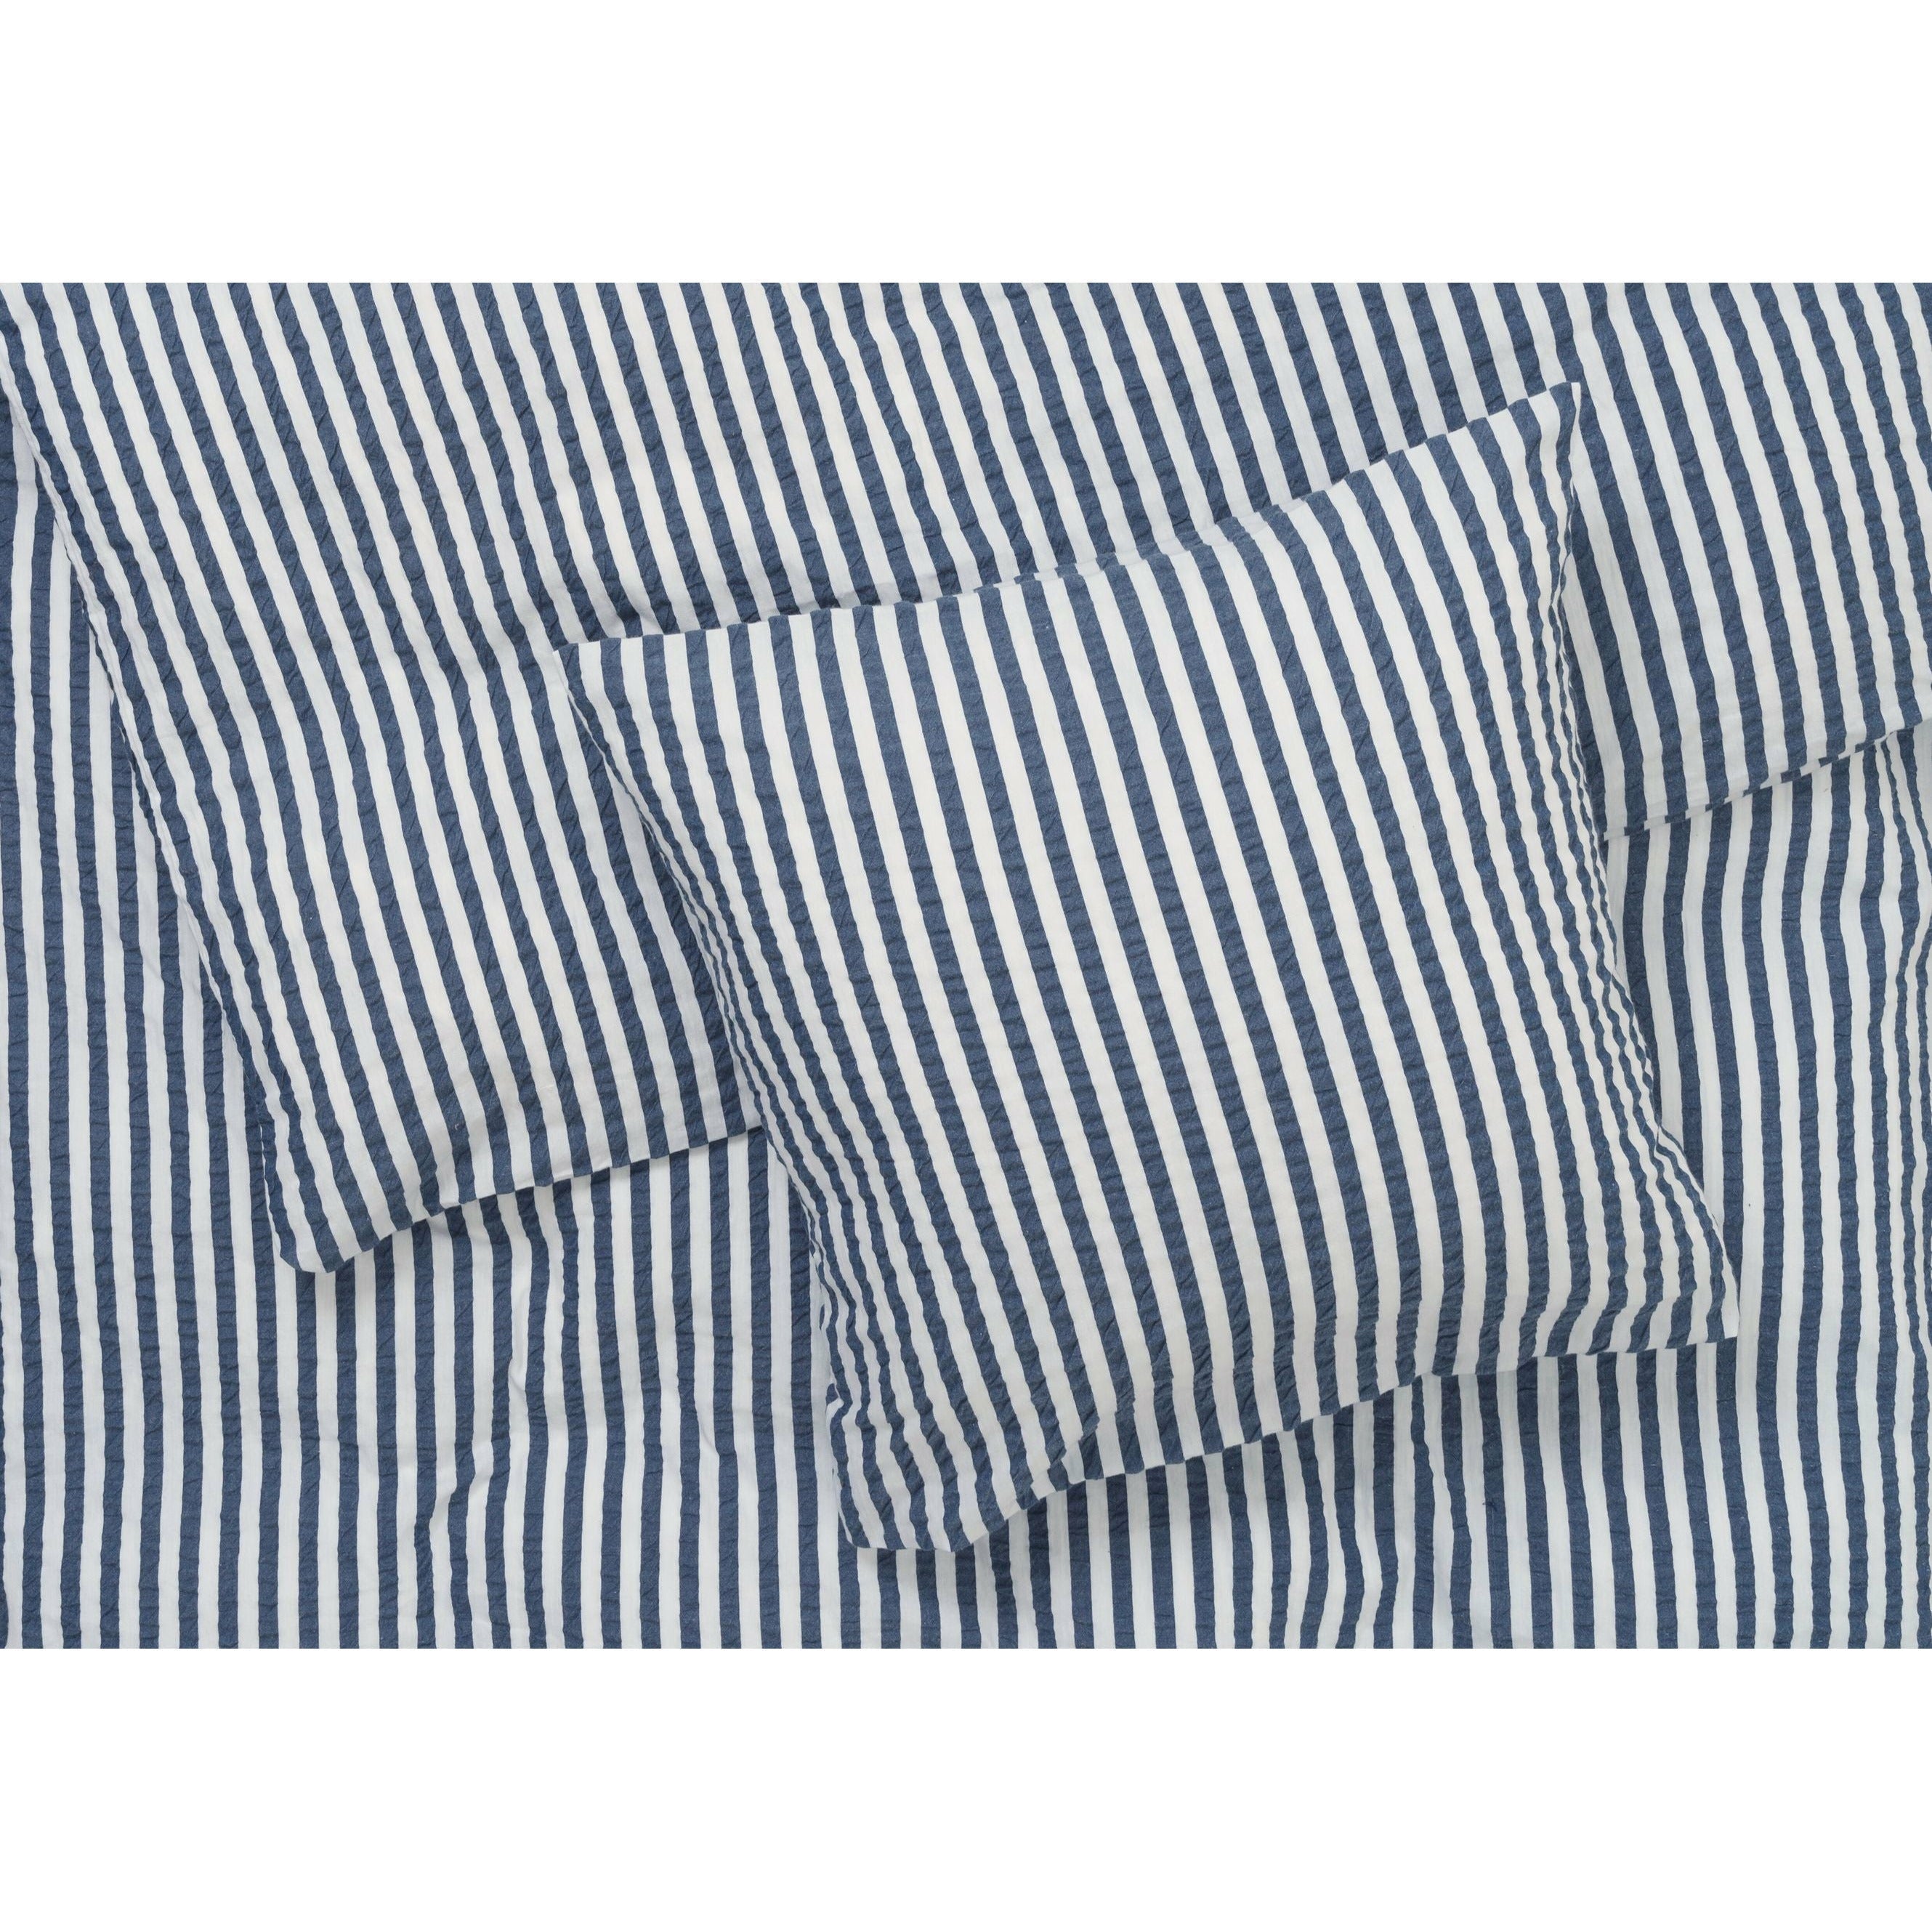 Juna Bæk & Bølge Lines Bed Linen 200x220 cm, mörkblå/vit